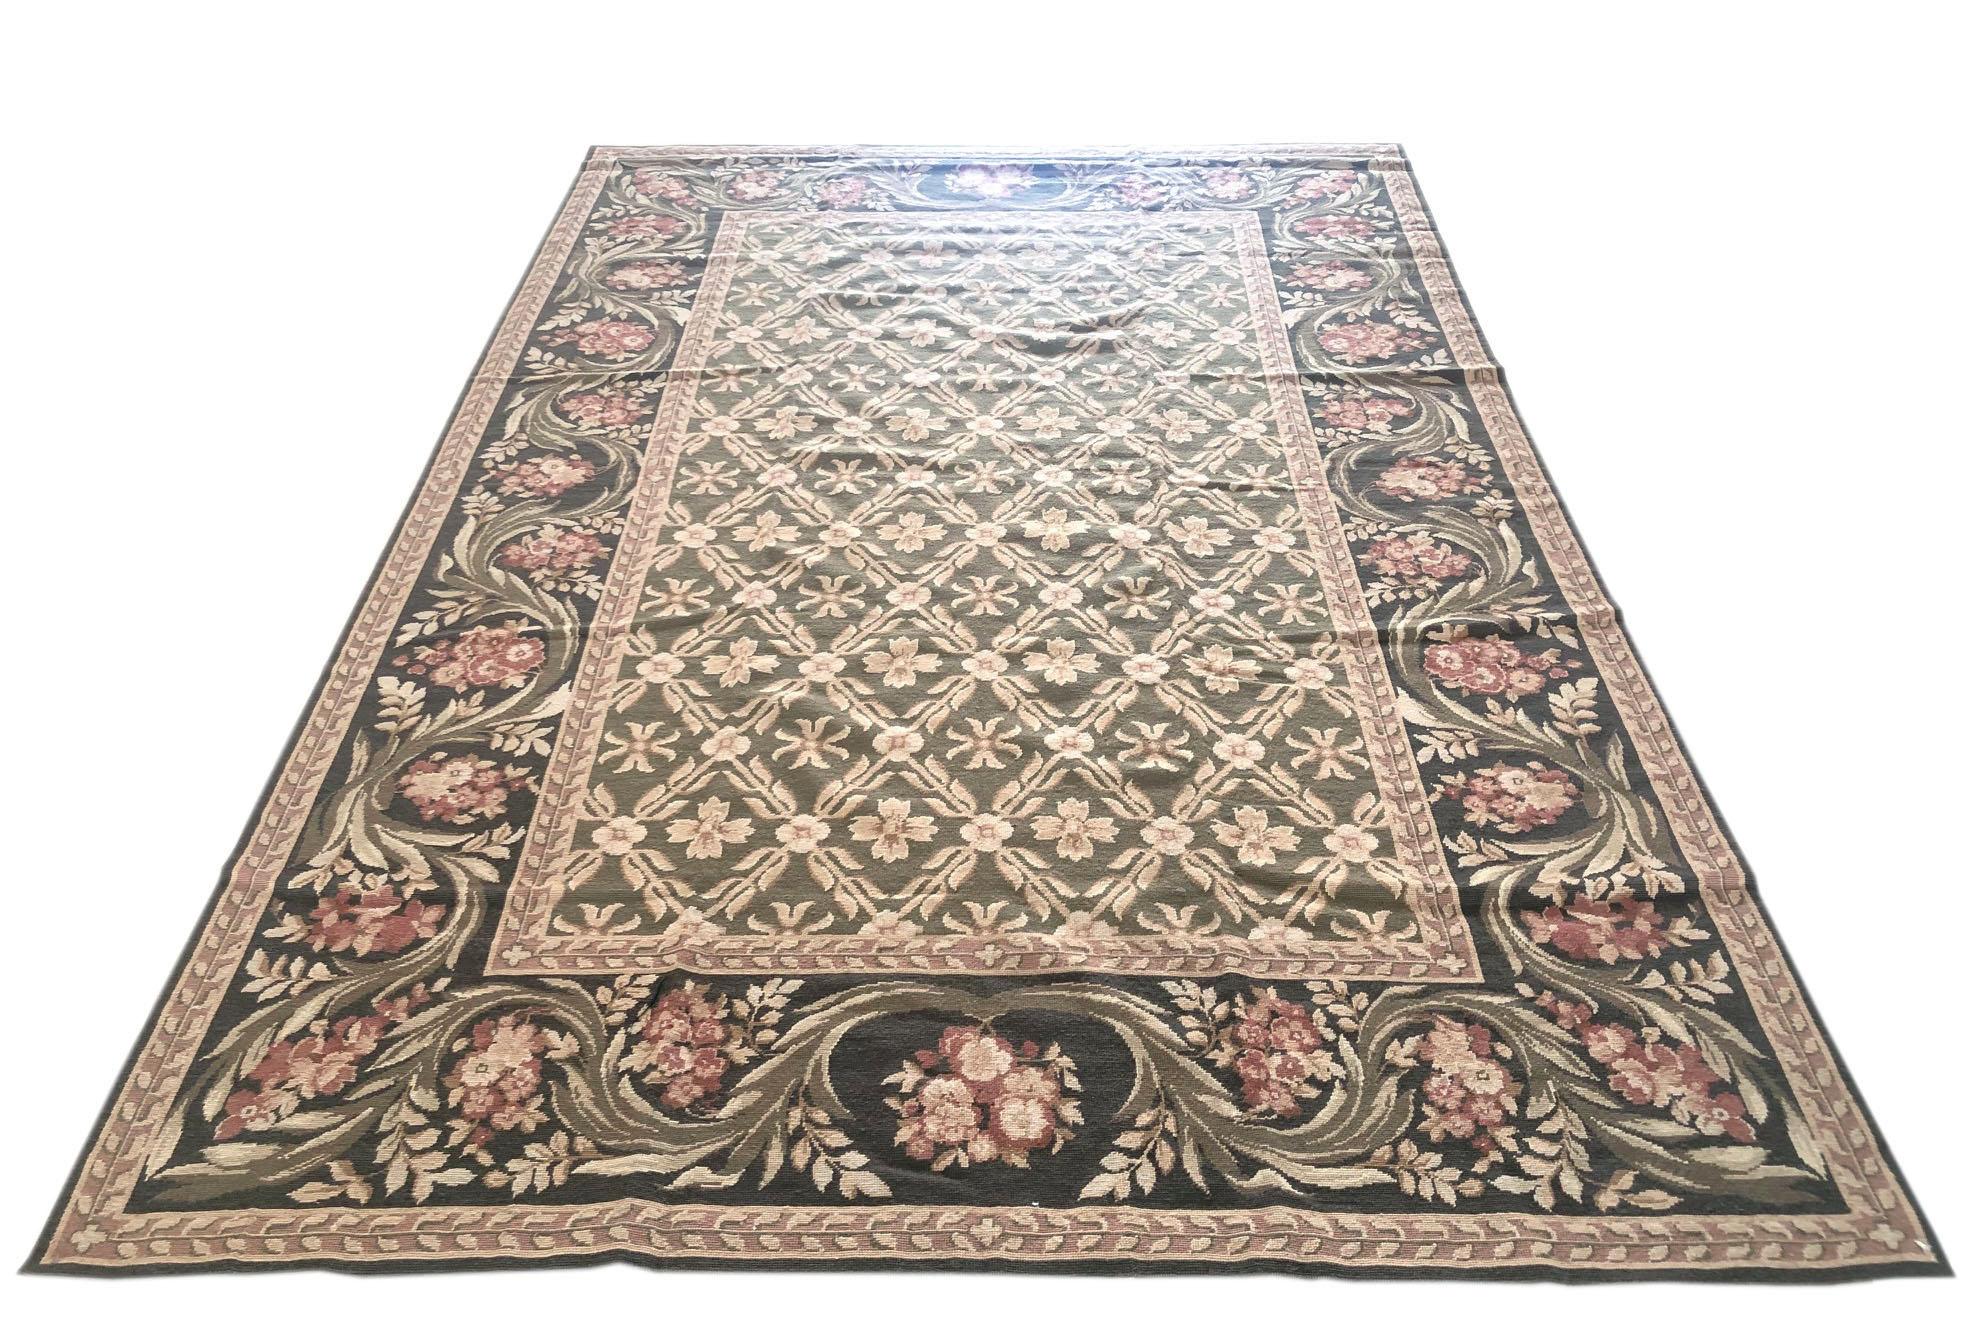 Dieses Stück ist ein chinesischer Teppich mit floralem Rautenmuster und Nadelspitze. Die Grundfarbe und die Randfarben sind beide in verschiedenen Grüntönen gehalten. Die Größe ist 5 Fuß breit und 9 Fuß hoch. Dies ist ein brandneuer Teppich.